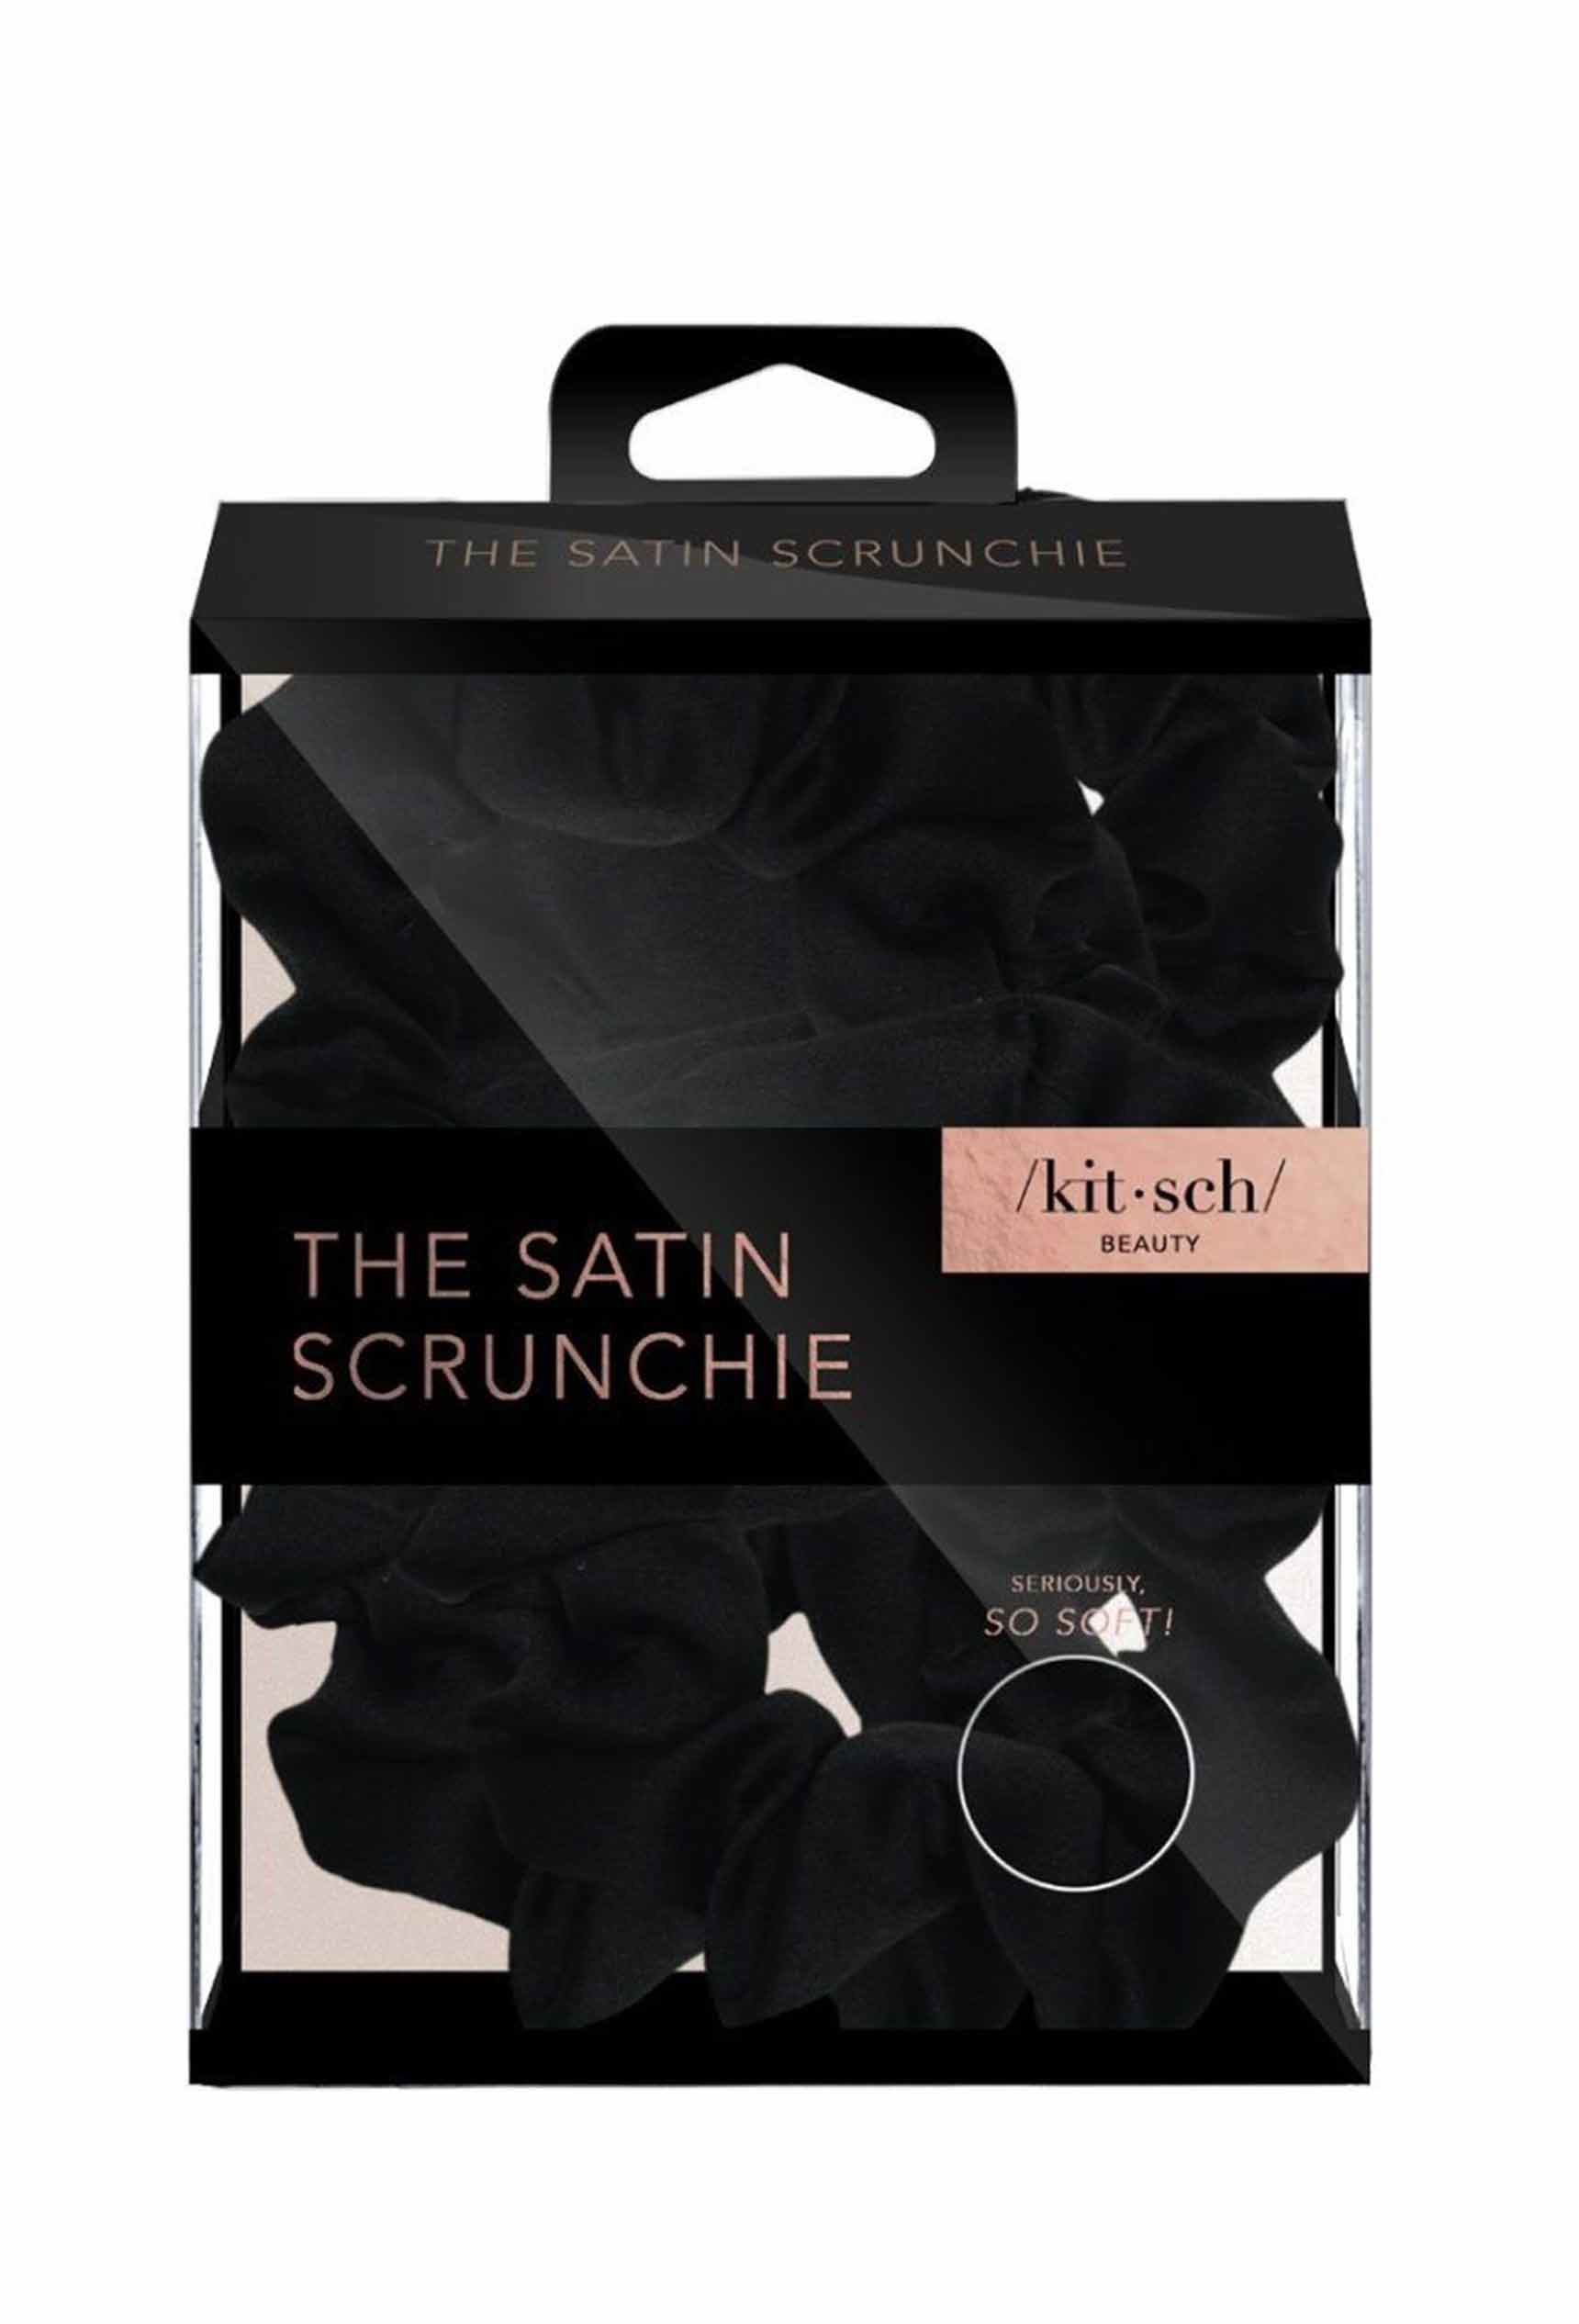 Kitsch Satin Sleep Scrunchies in Black, black satin scrunchie set 